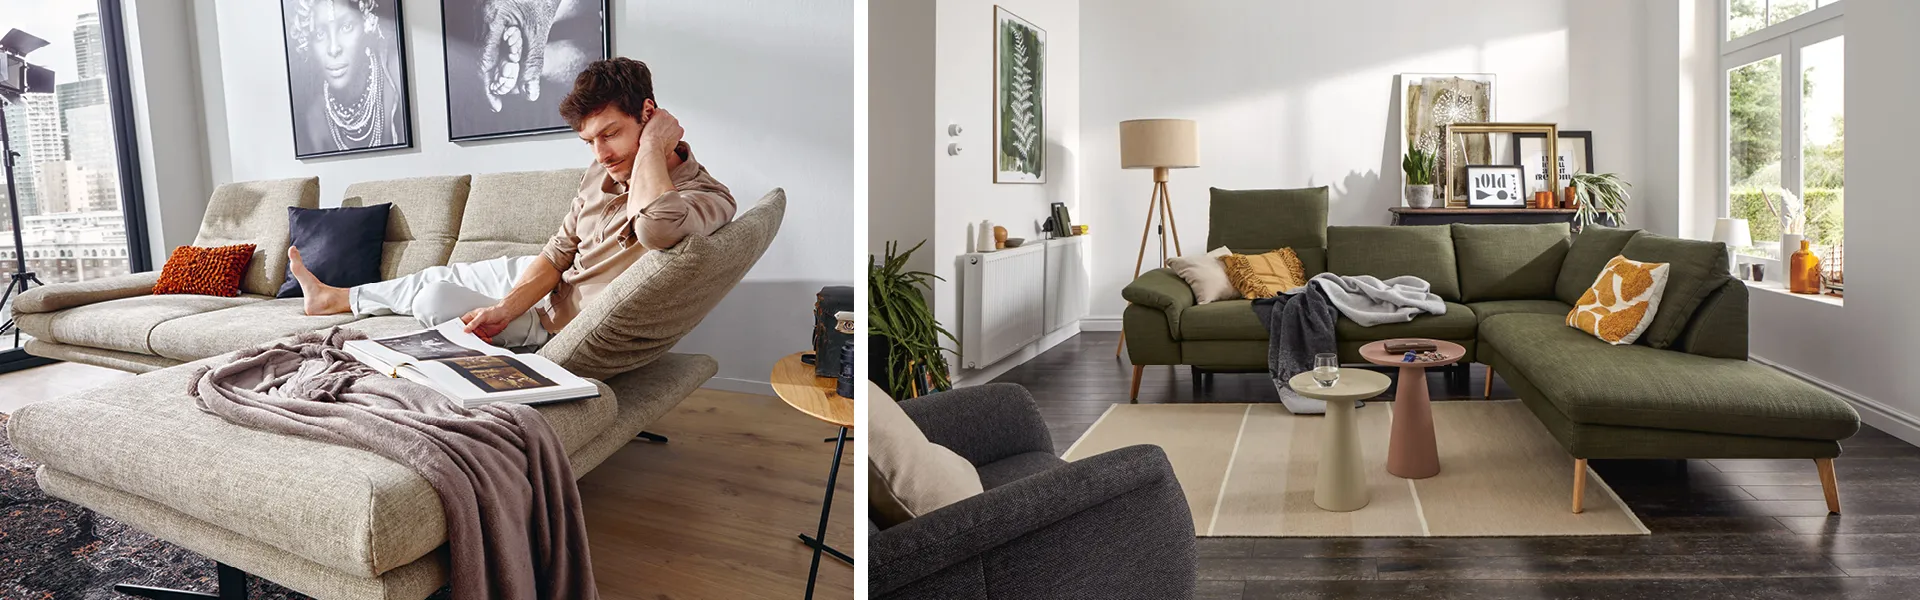 Mann auf ergonomischen Sofa in Naturfarben mit Buch und Decke, Global Sofa Gotera